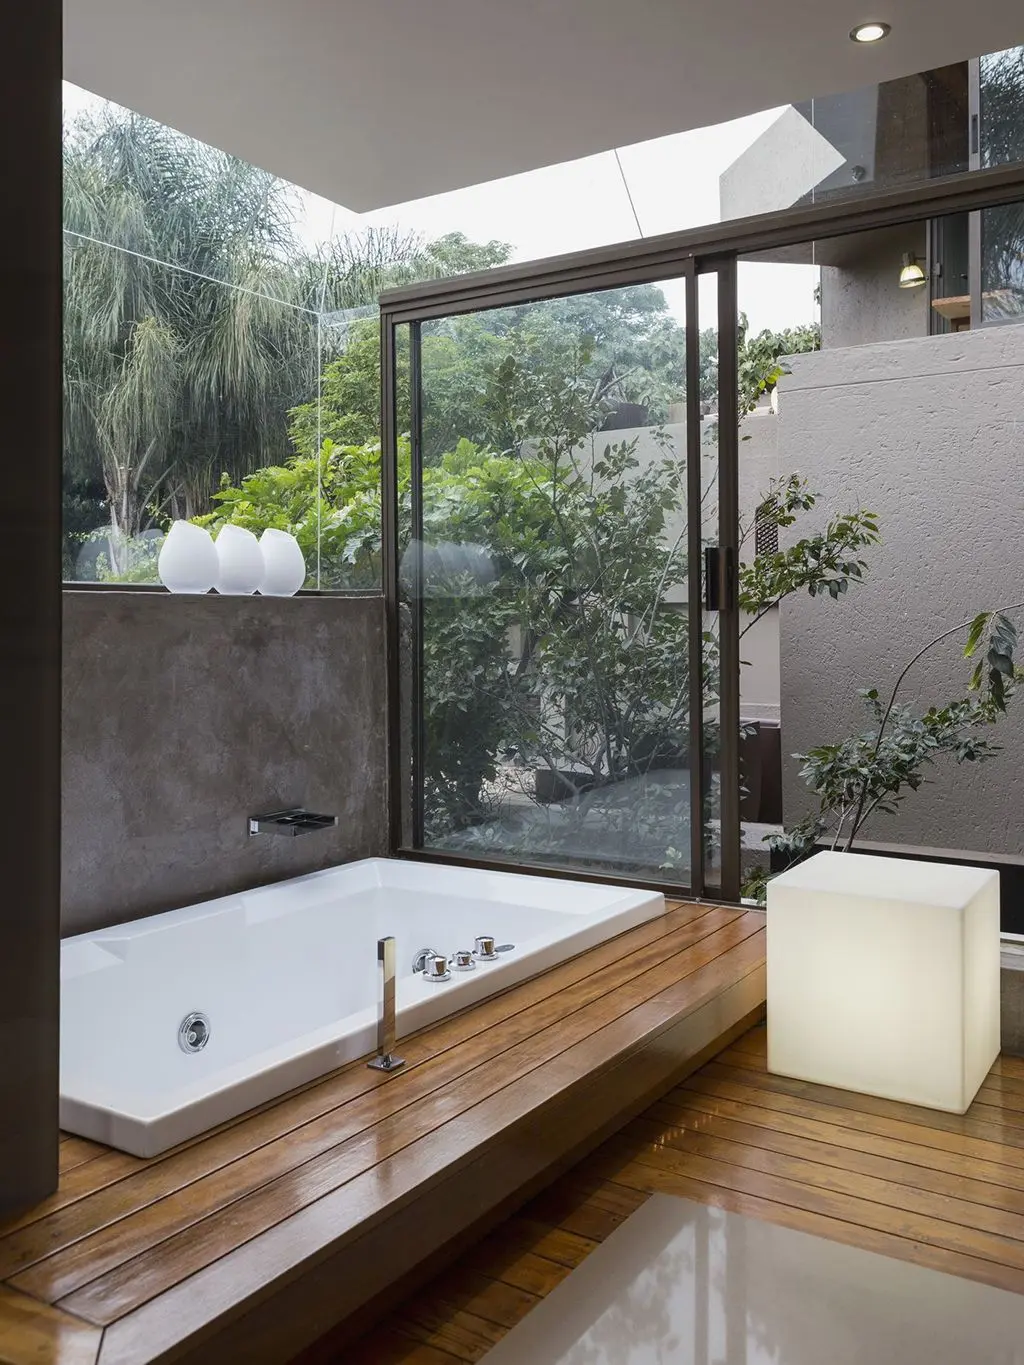 baño con techo de vidrio - Qué poner en el techo del baño para la humedad